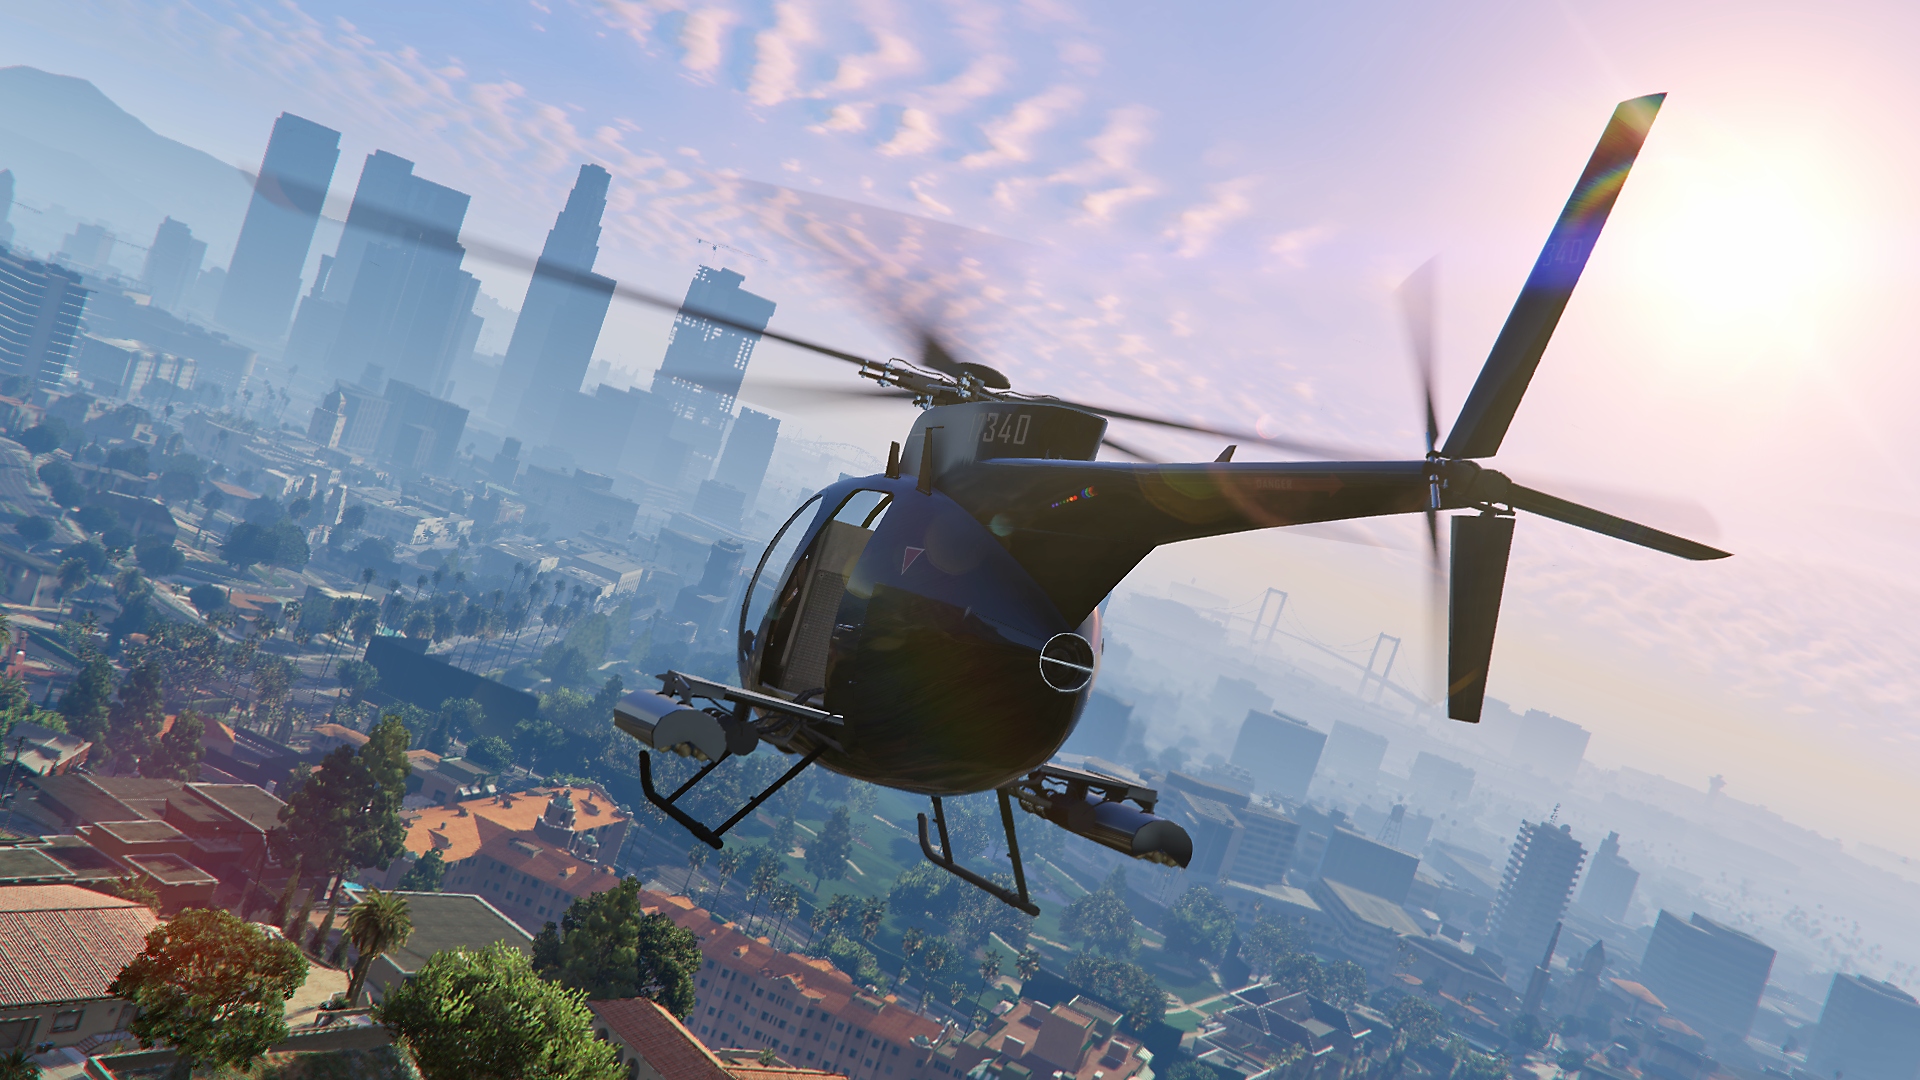 Captura de pantalla de Grand Theft Auto V que muestra un helicóptero volando con el perfil de la ciudad en la distancia